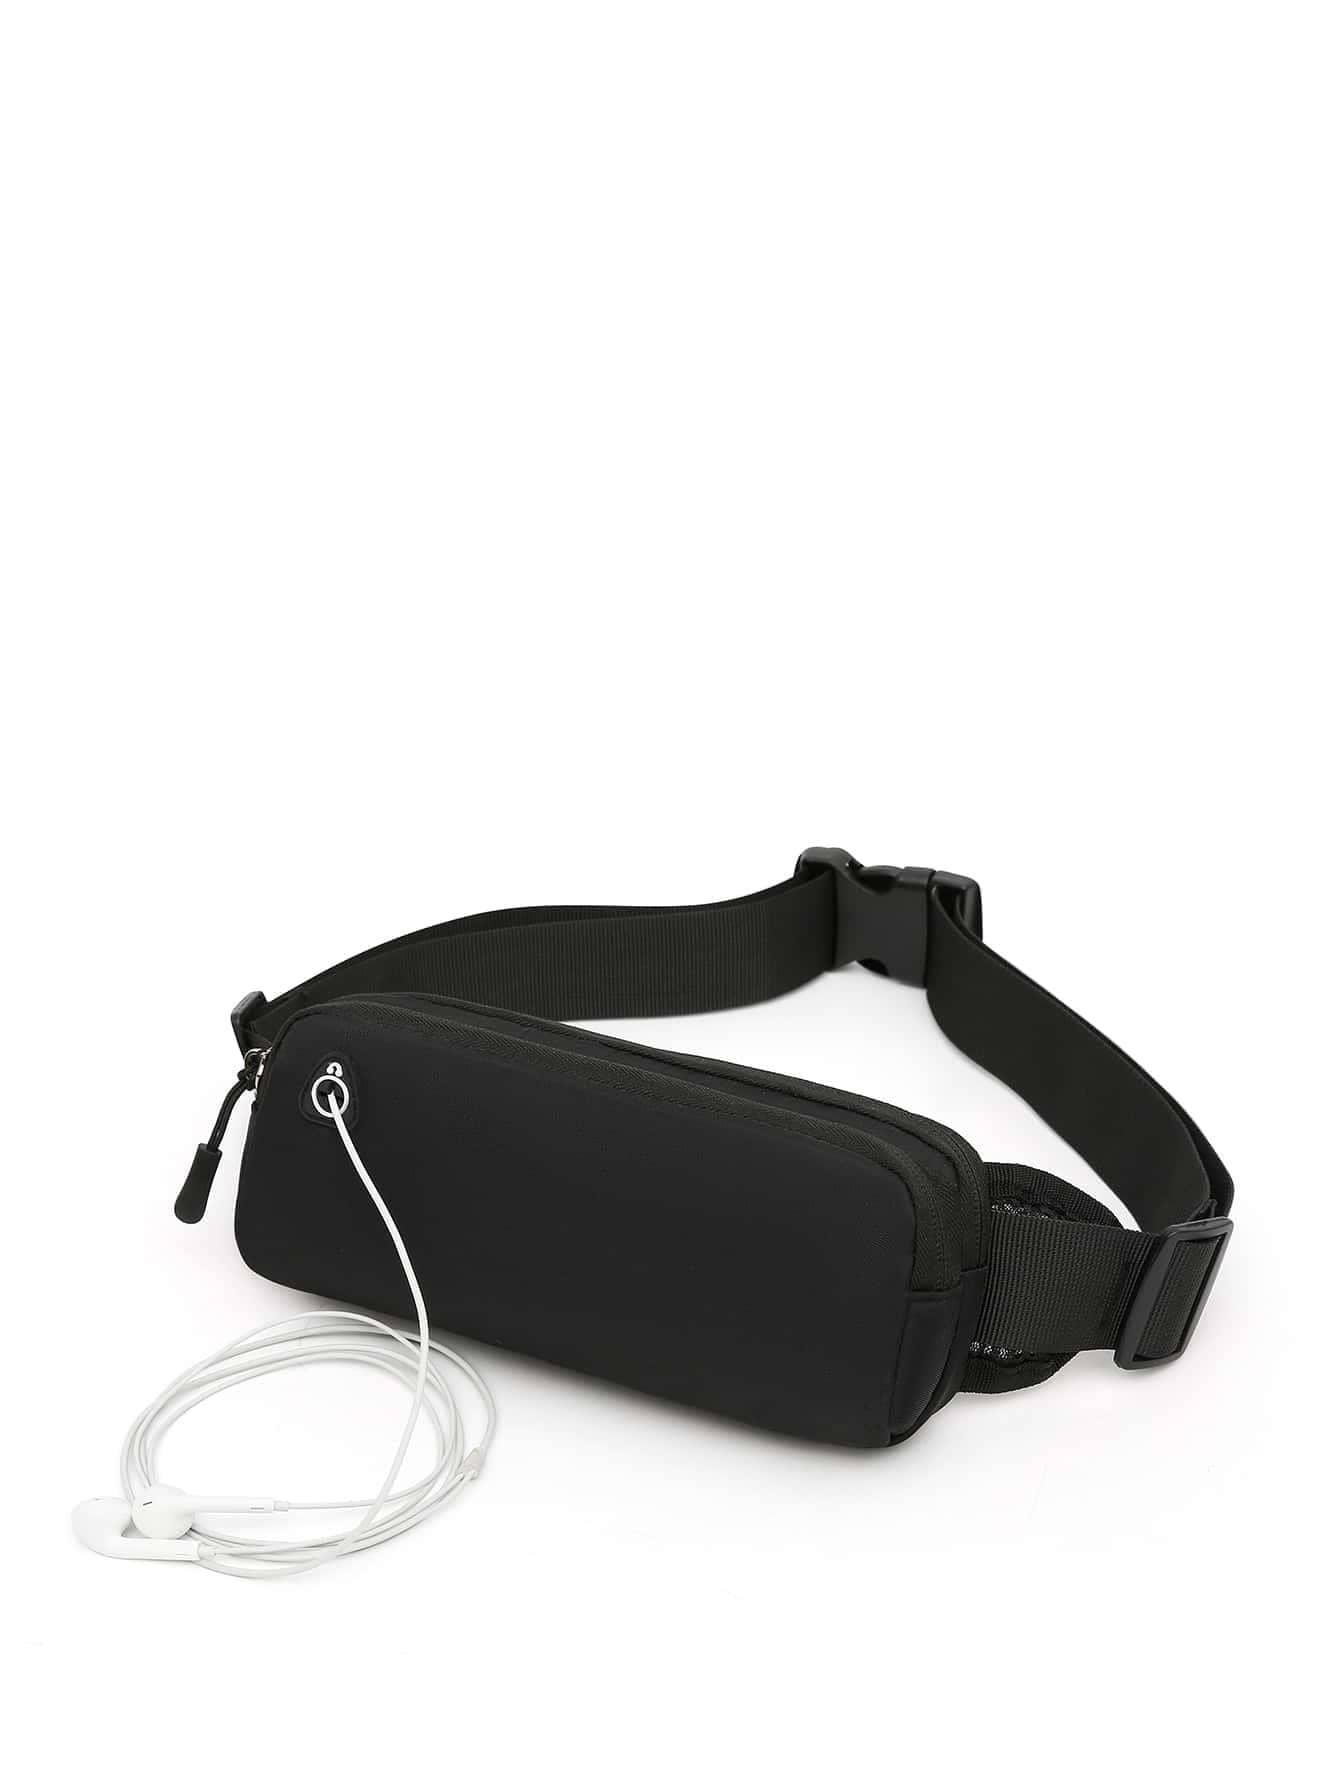 1 шт. поясная сумка поясная сумка для бега спортивная портативная спортивная сумка велосипедный телефон женский беговой пояс, черный сумка поясная piove спортивная текстиль белый черный